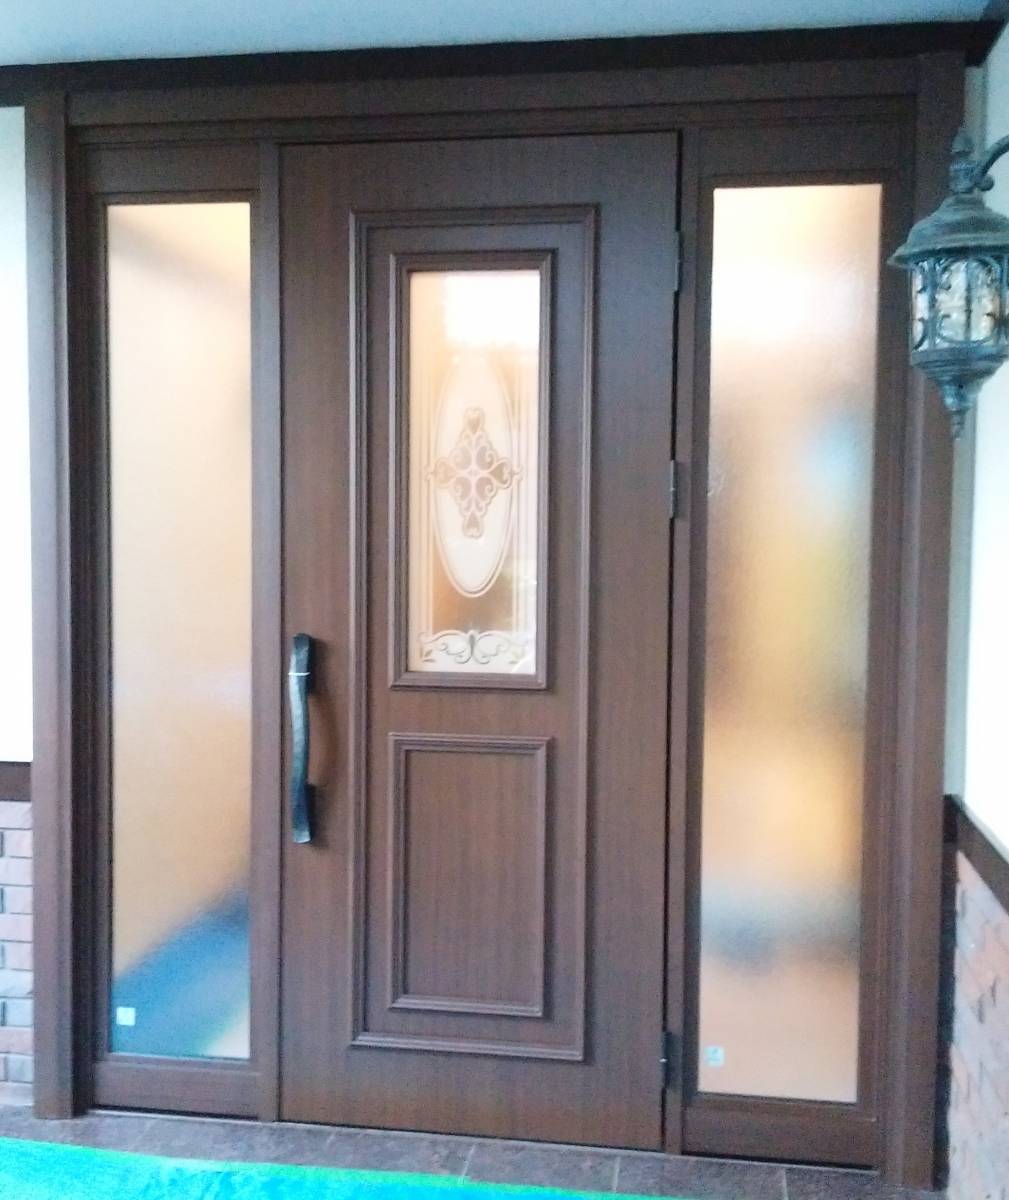 青梅トーヨー住器 所沢店のお気に入りの玄関ドアが一部変色してしまった。心ときめく玄関が見つかったら変えたいけれど・・・の施工後の写真1